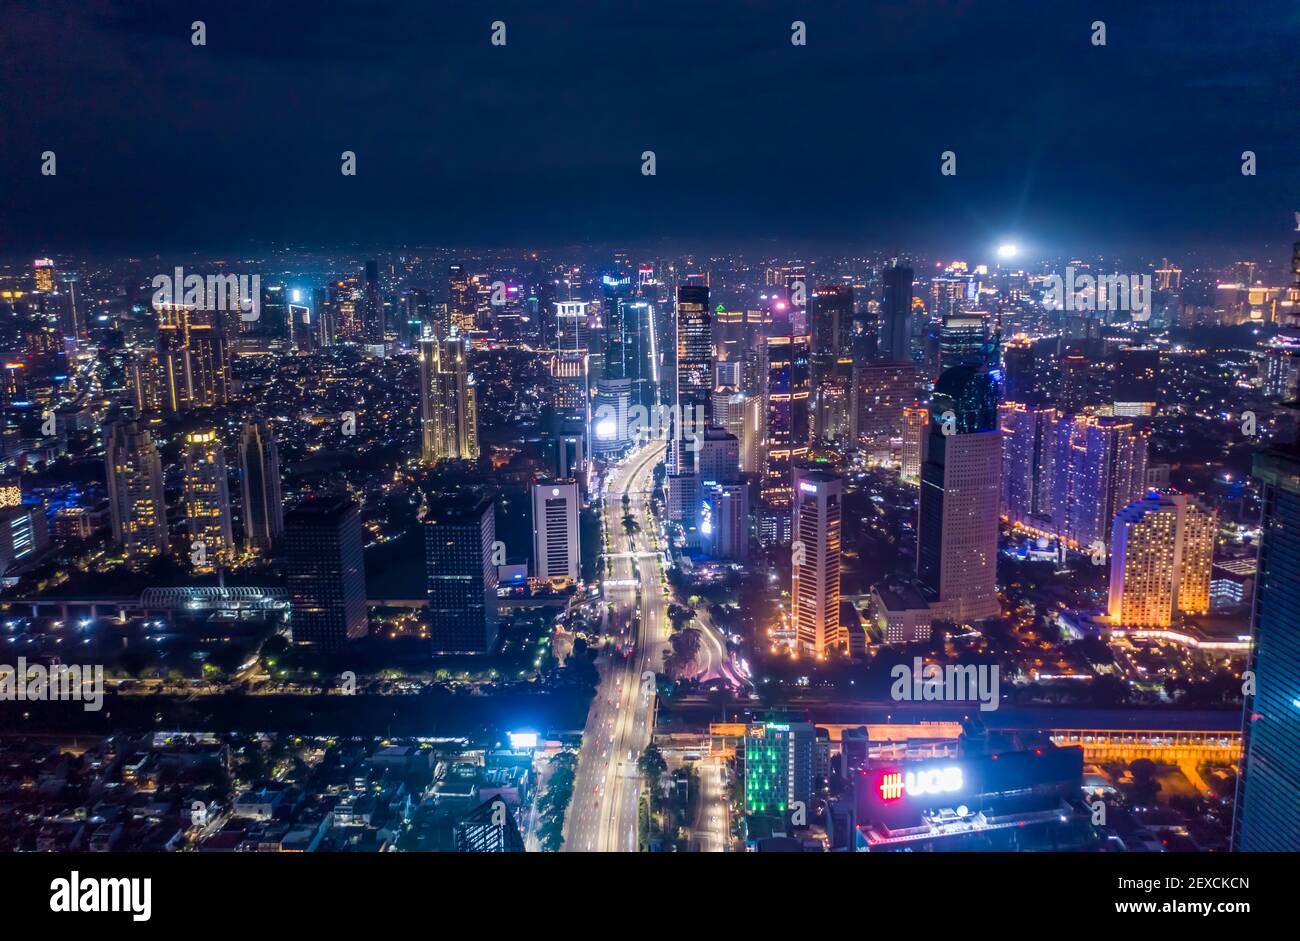 Luftaufnahme Nacht Stadtbild von Wolkenkratzern und mehrspurigen Autobahn-Verkehr im modernen Stadtzentrum von Jakarta, Indonesien Städtisches Stadtzentrum mit Hochhäusern bei Nacht Stockfoto